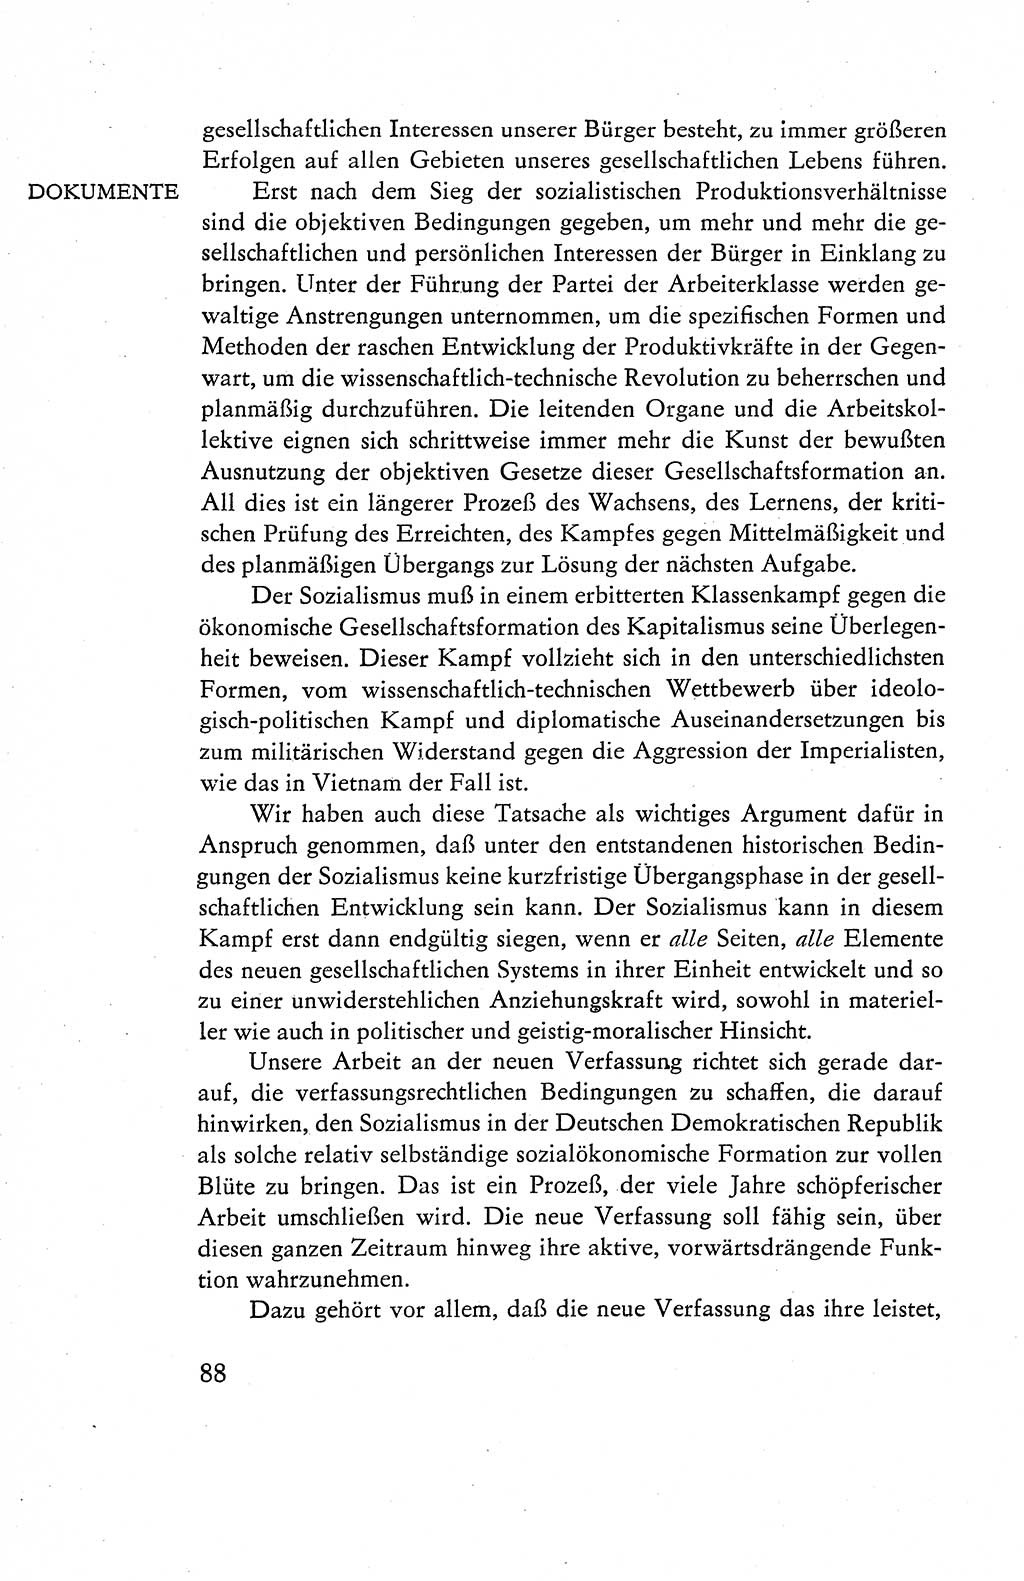 Verfassung der Deutschen Demokratischen Republik (DDR), Dokumente, Kommentar 1969, Band 1, Seite 88 (Verf. DDR Dok. Komm. 1969, Bd. 1, S. 88)